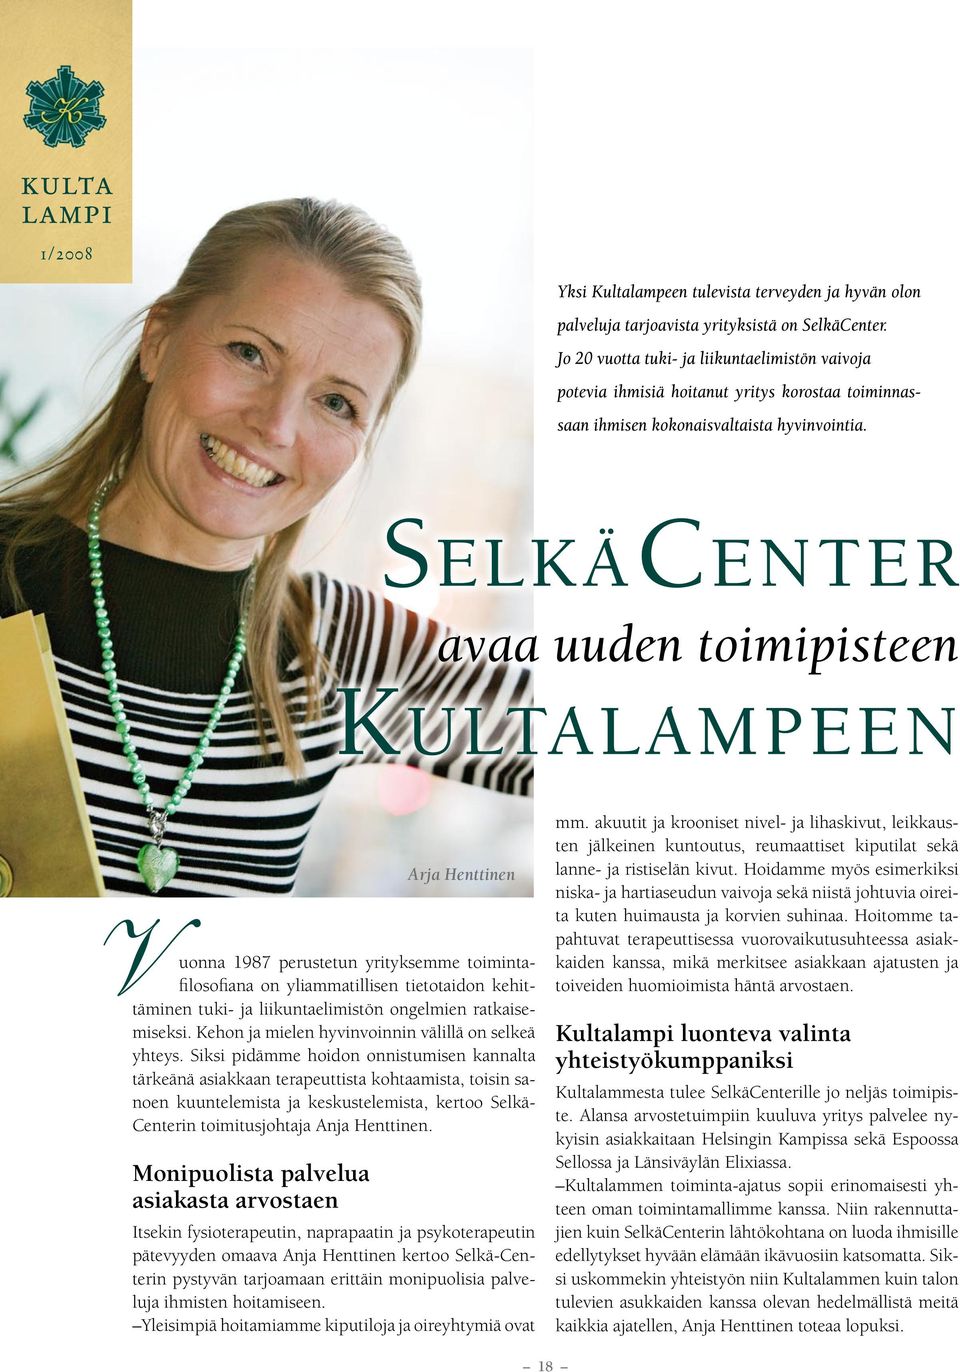 Siksi pidämme hoidon onnistumisen kannalta tärkeänä asiakkaan terapeuttista kohtaamista, toisin sanoen kuuntelemista ja keskustelemista, kertoo Selkä- Centerin toimitusjohtaja Anja Henttinen.